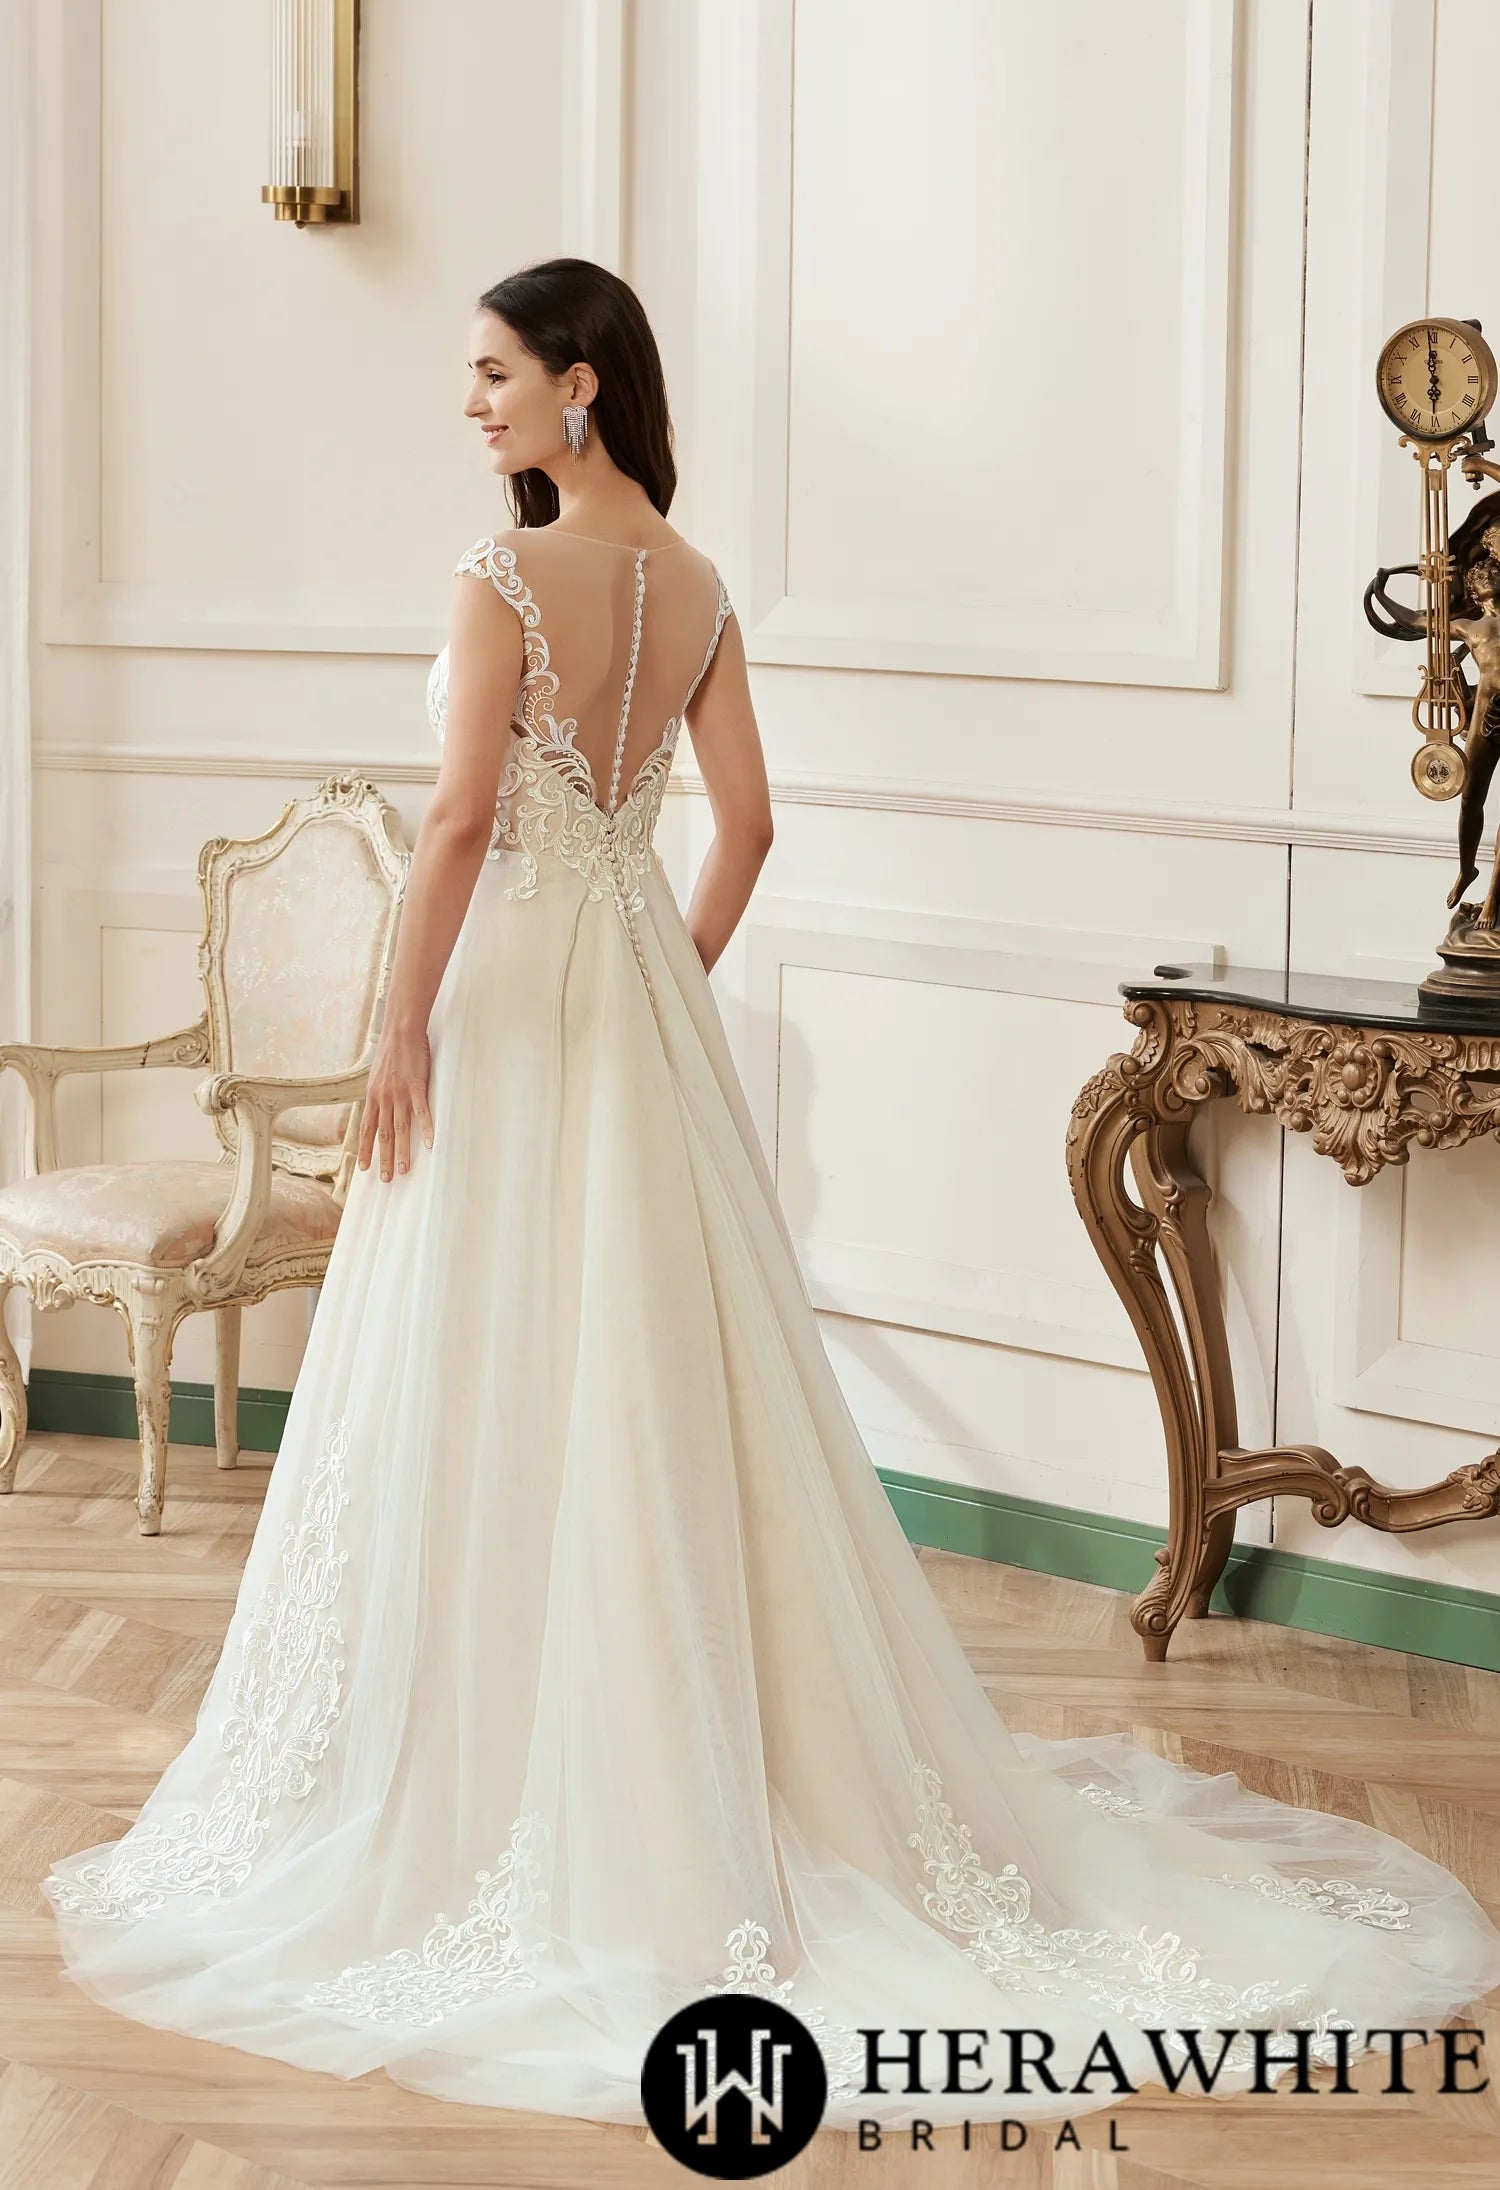 Illusion A-Line Scoop Neckline Lace Bridal Gown